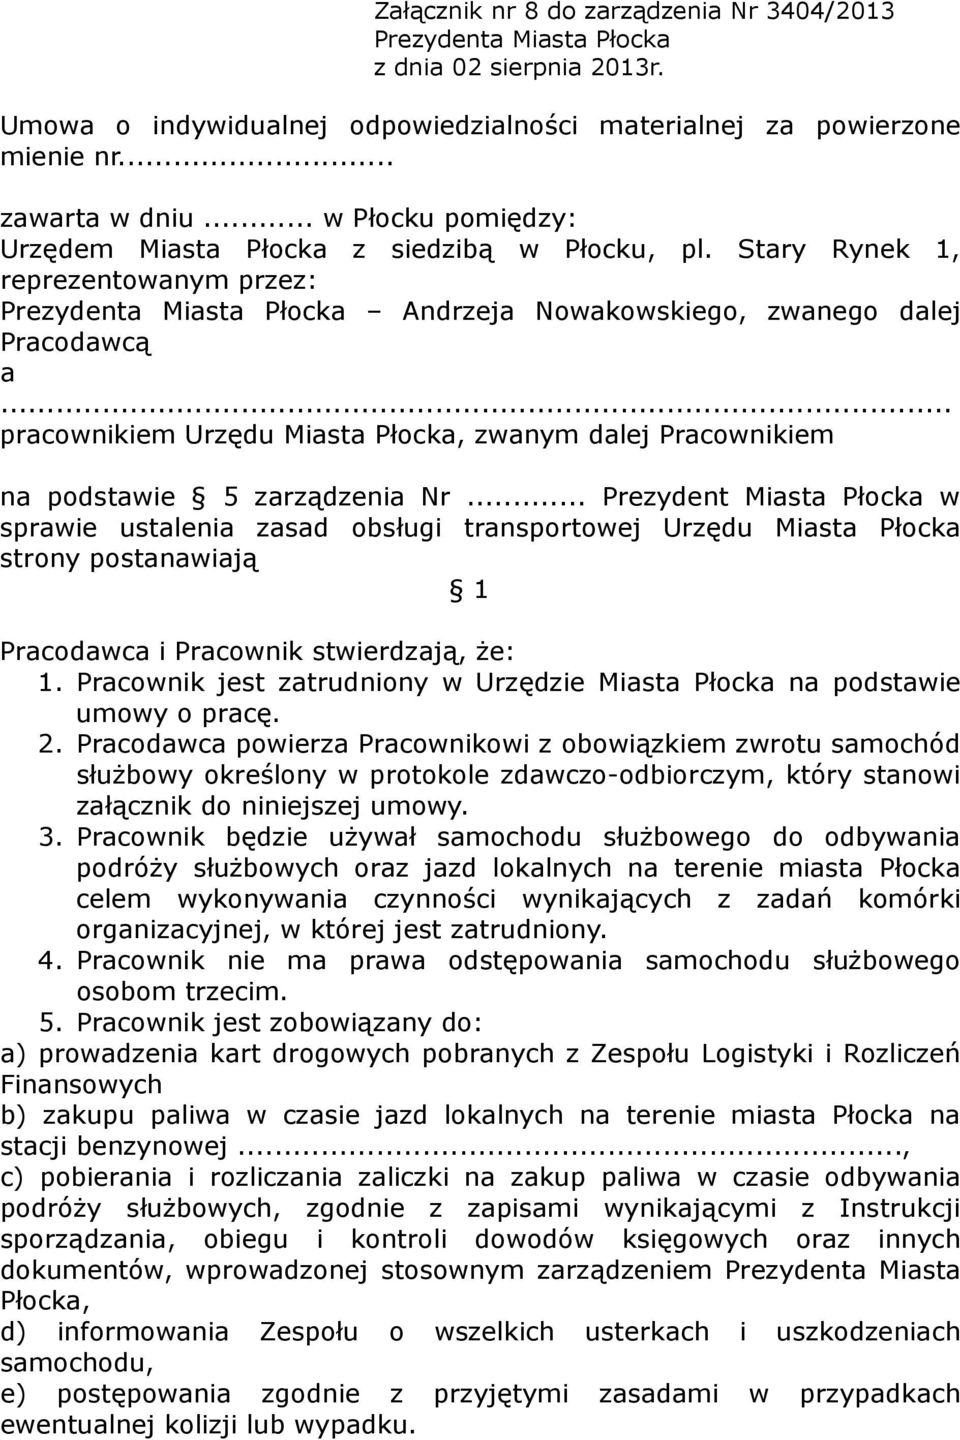 .. pracownikiem Urzędu Miasta Płocka, zwanym dalej Pracownikiem na podstawie 5 zarządzenia Nr.